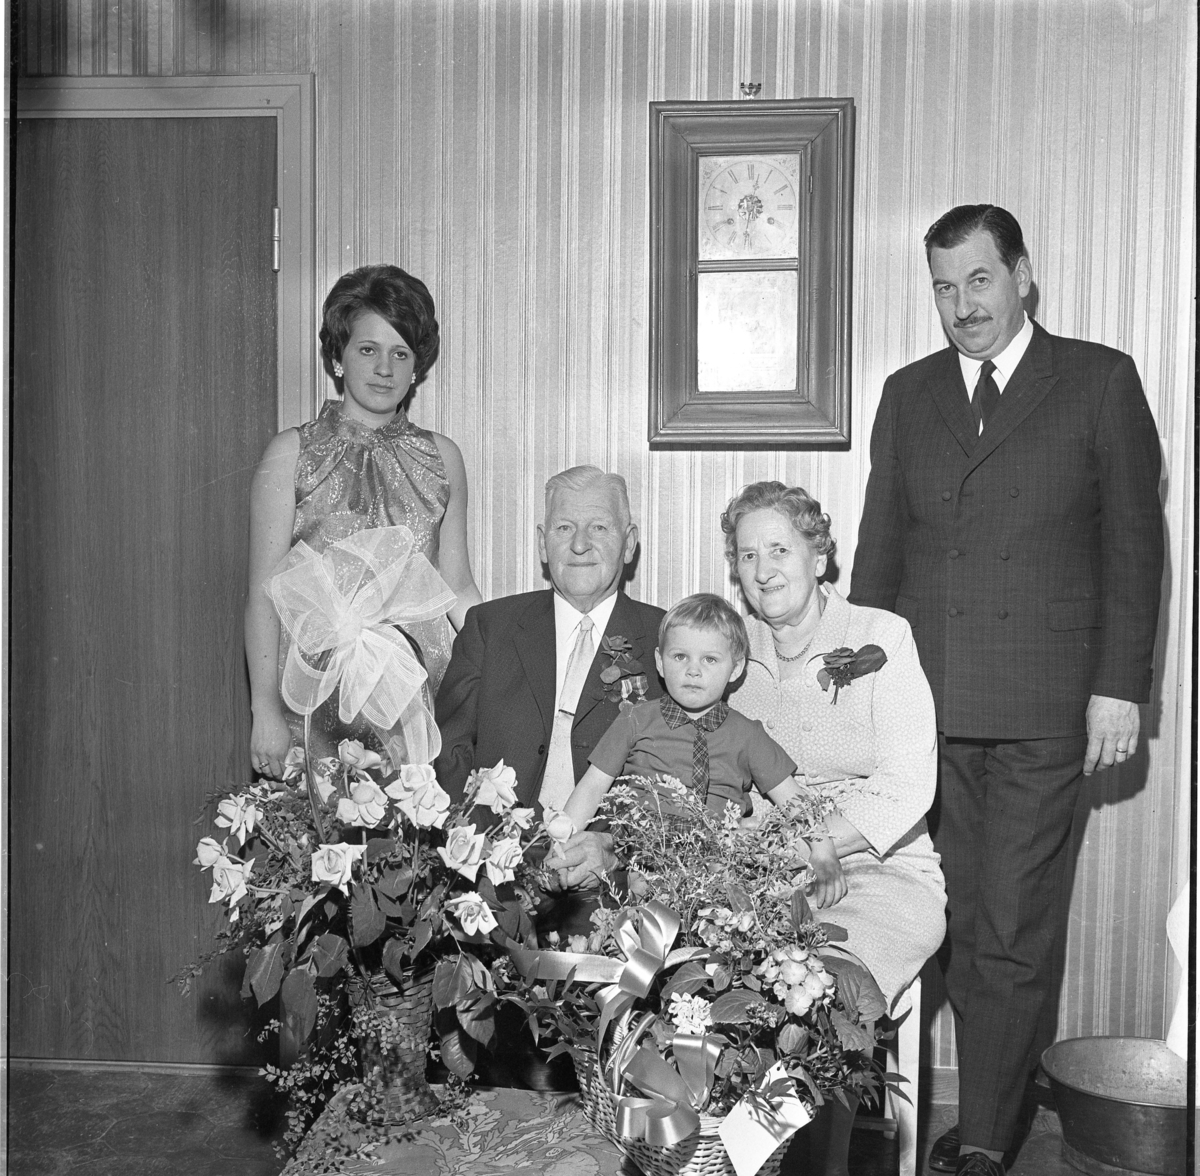 Gruppbild med fyra generationer Edberg. De äldre A T och Signe Edberg sitter bakom en bord med blombuketter. De flankeras av barnbarnet Agneta Blomberg till vänster och sonen Albert Edberg till höger. I Signes knä sitter barnbarnsbarnet Susanne.